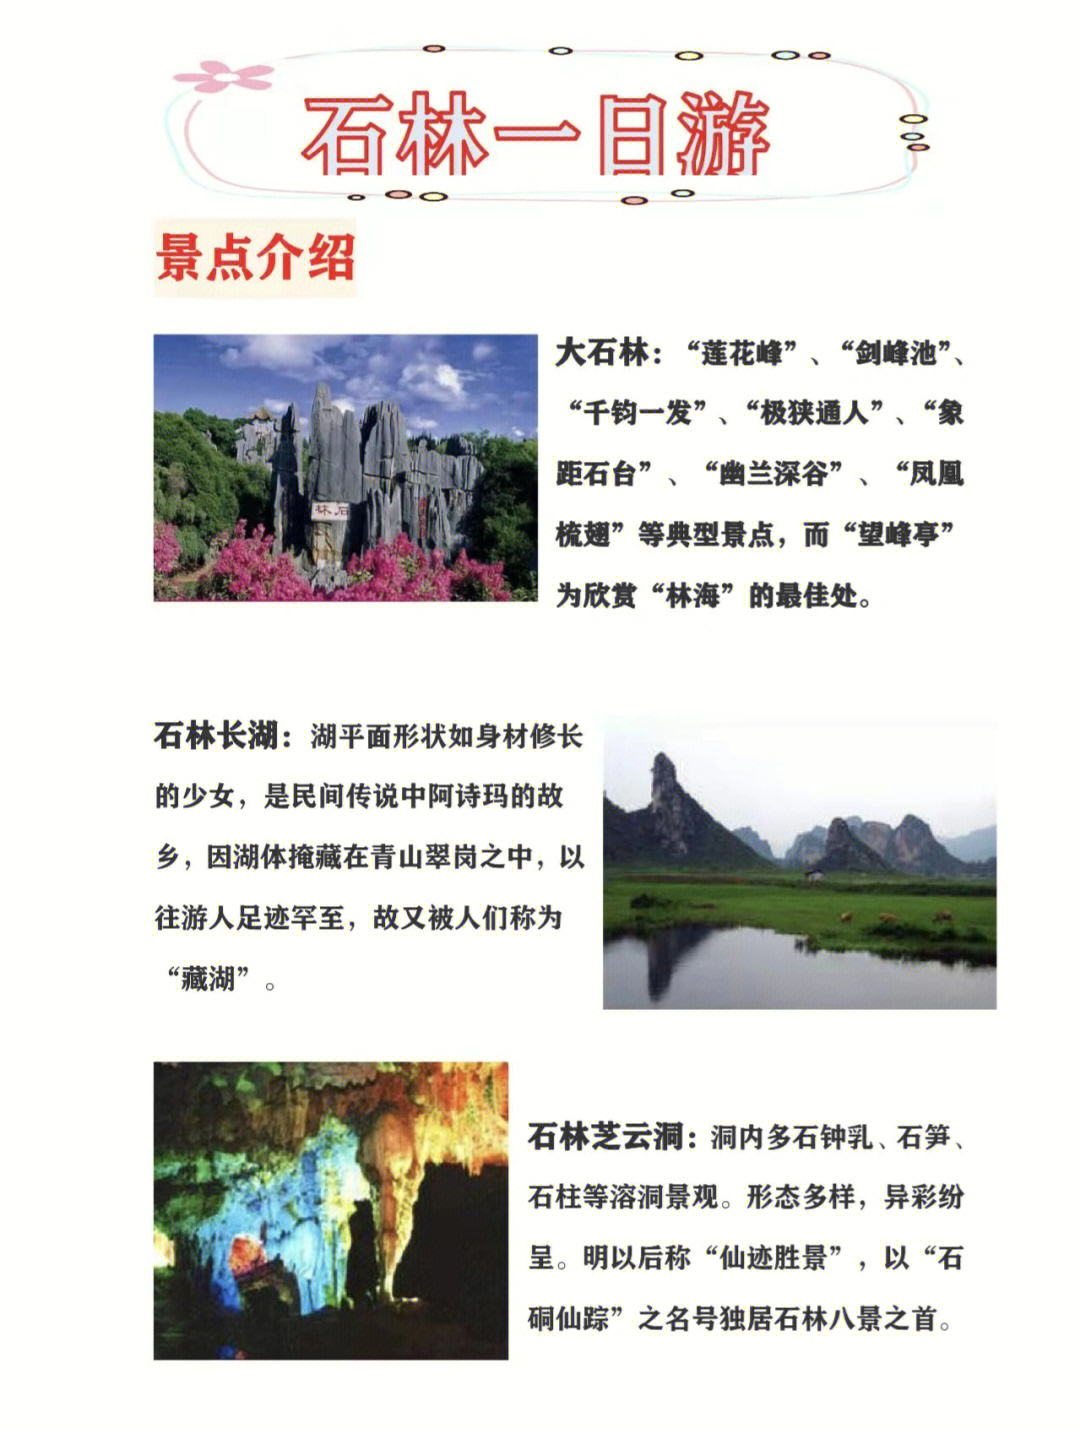 云南旅游丨石林神秘92自然之地60